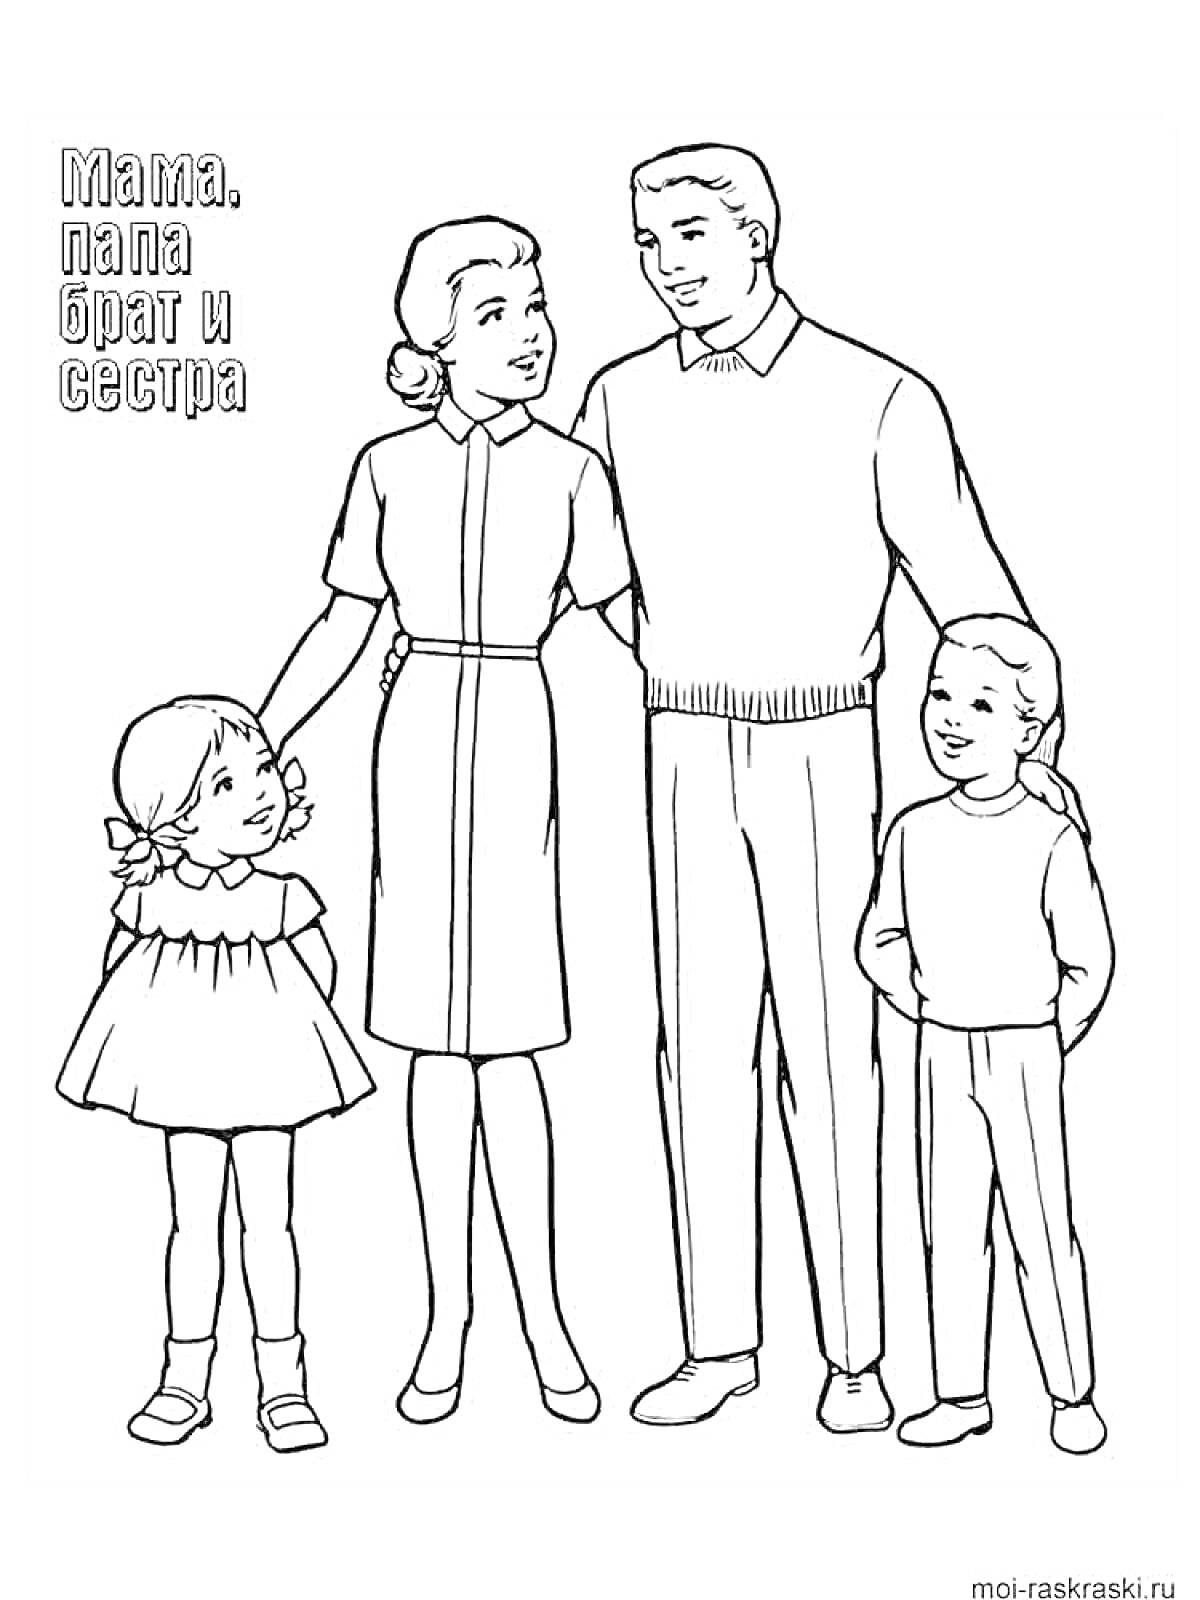 Семейный портрет: мама, папа, брат и сестра